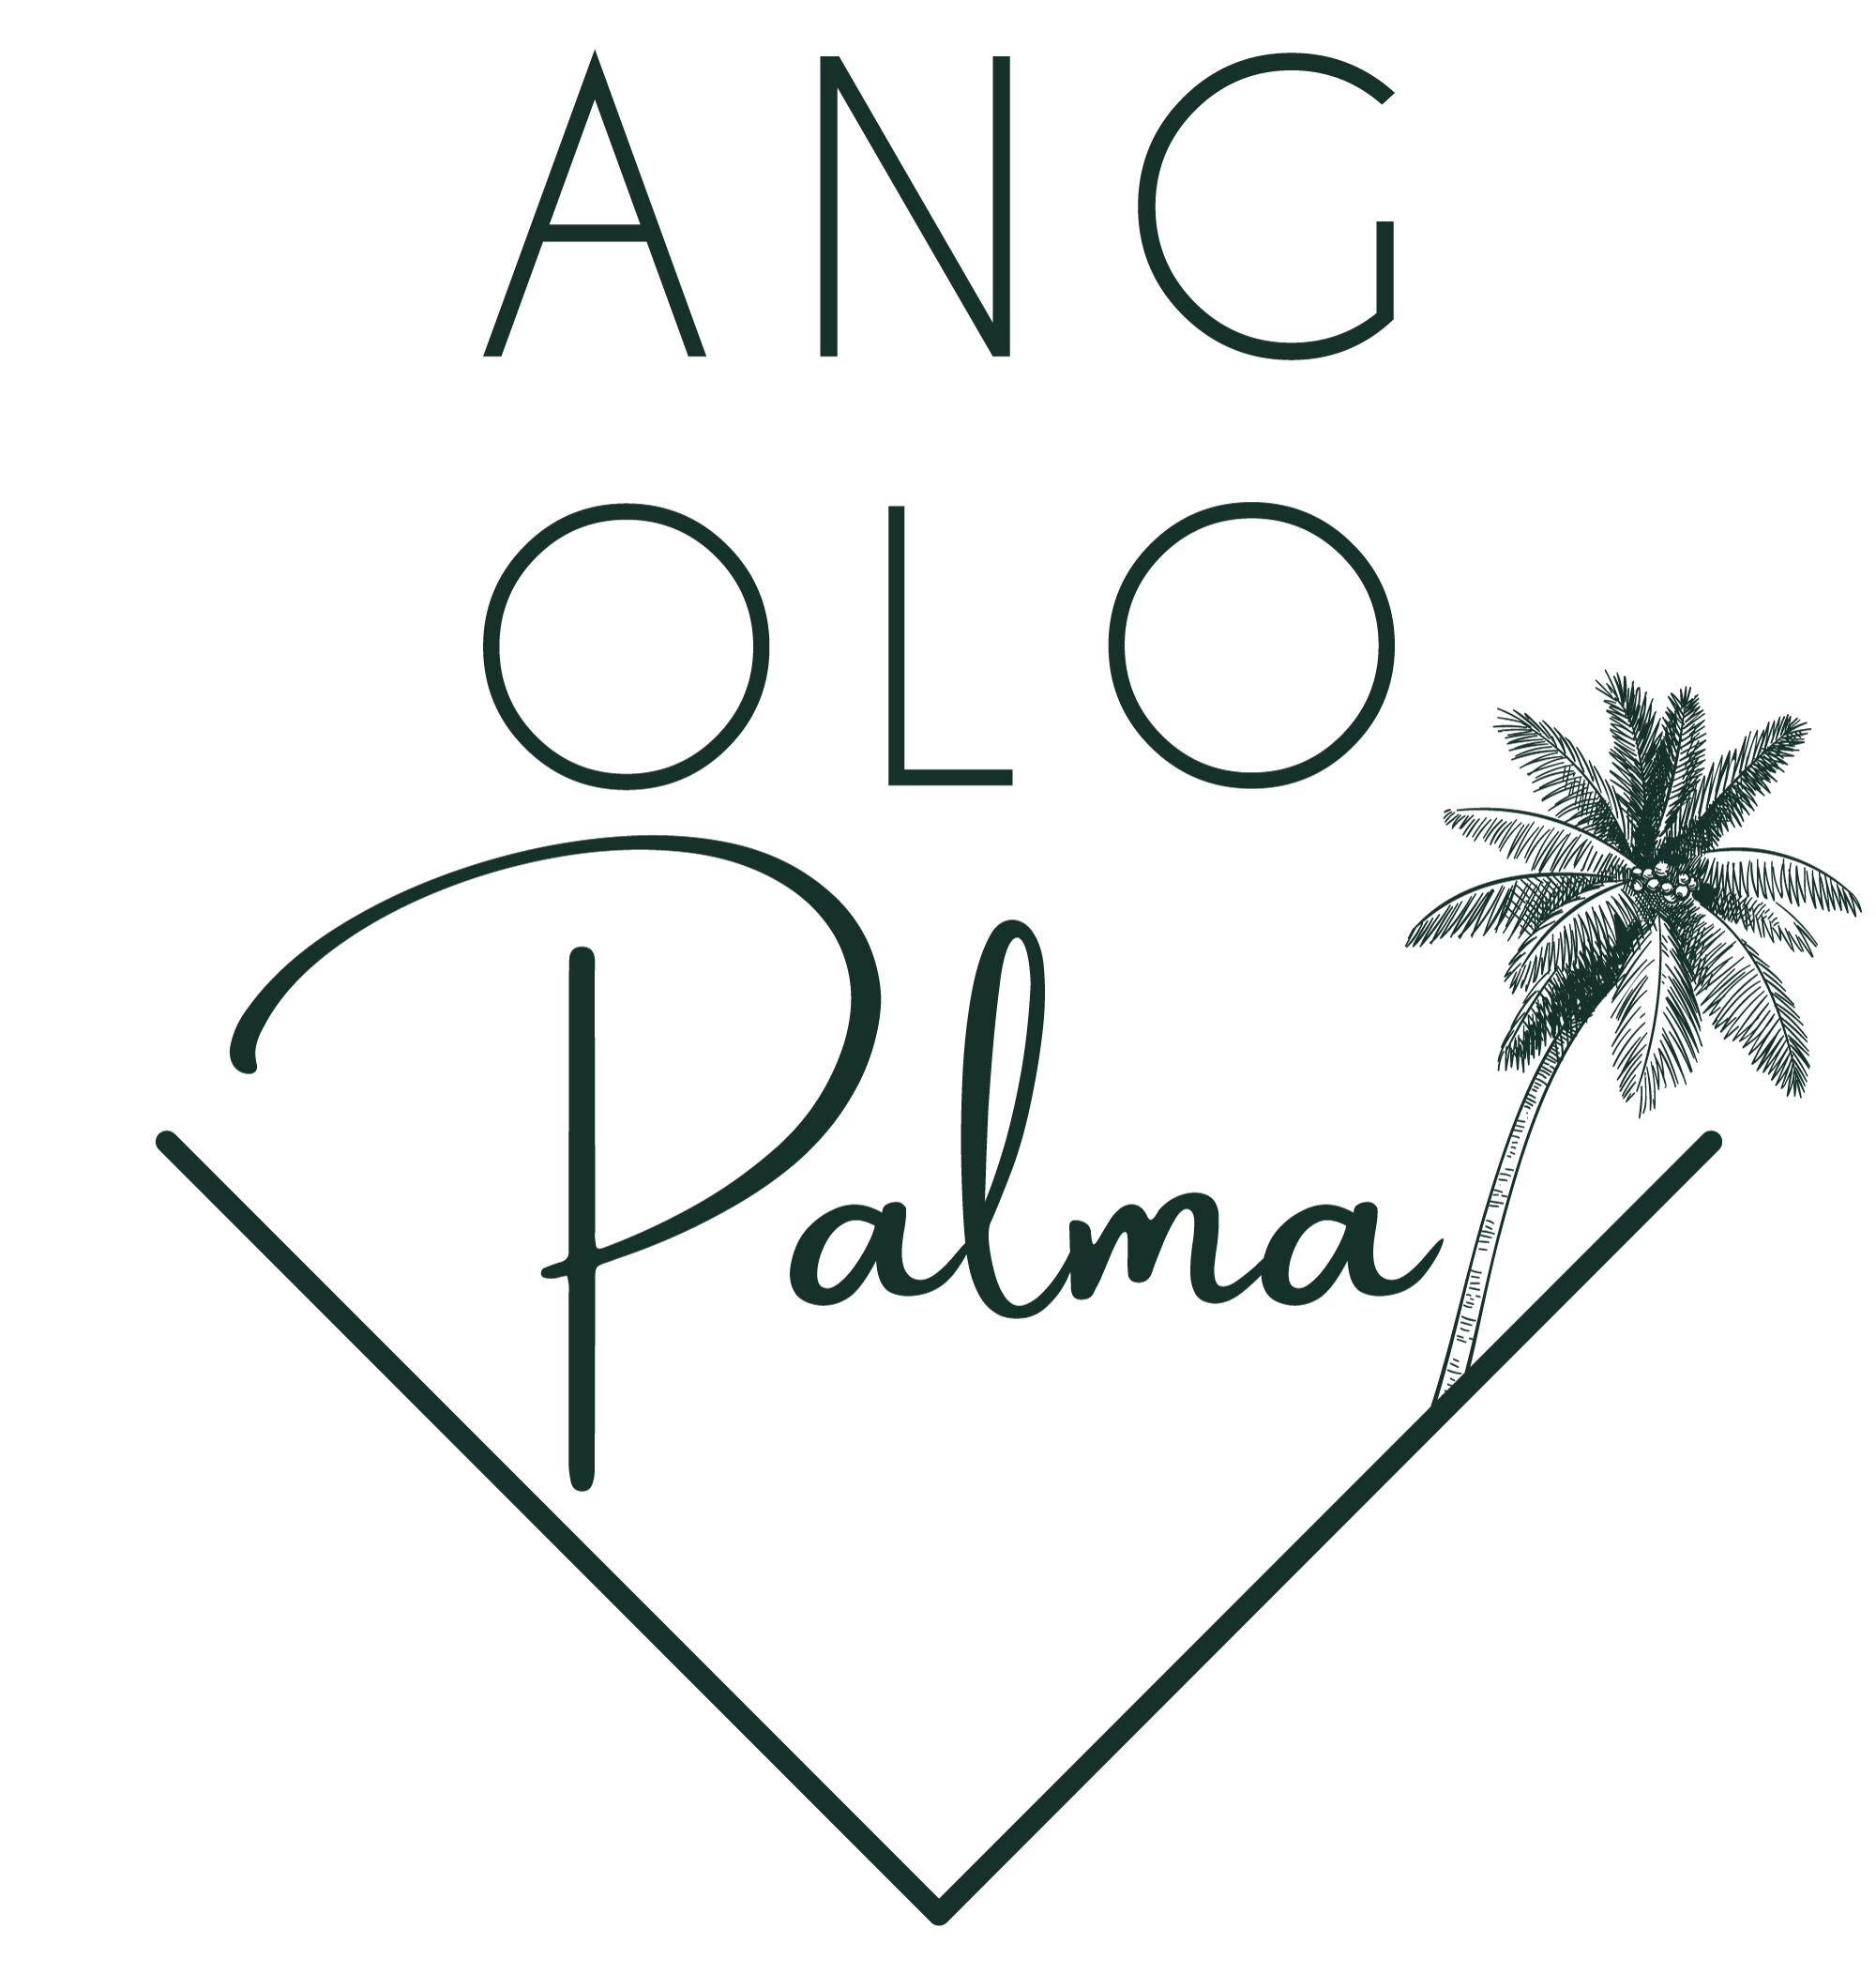 Angolo Palma